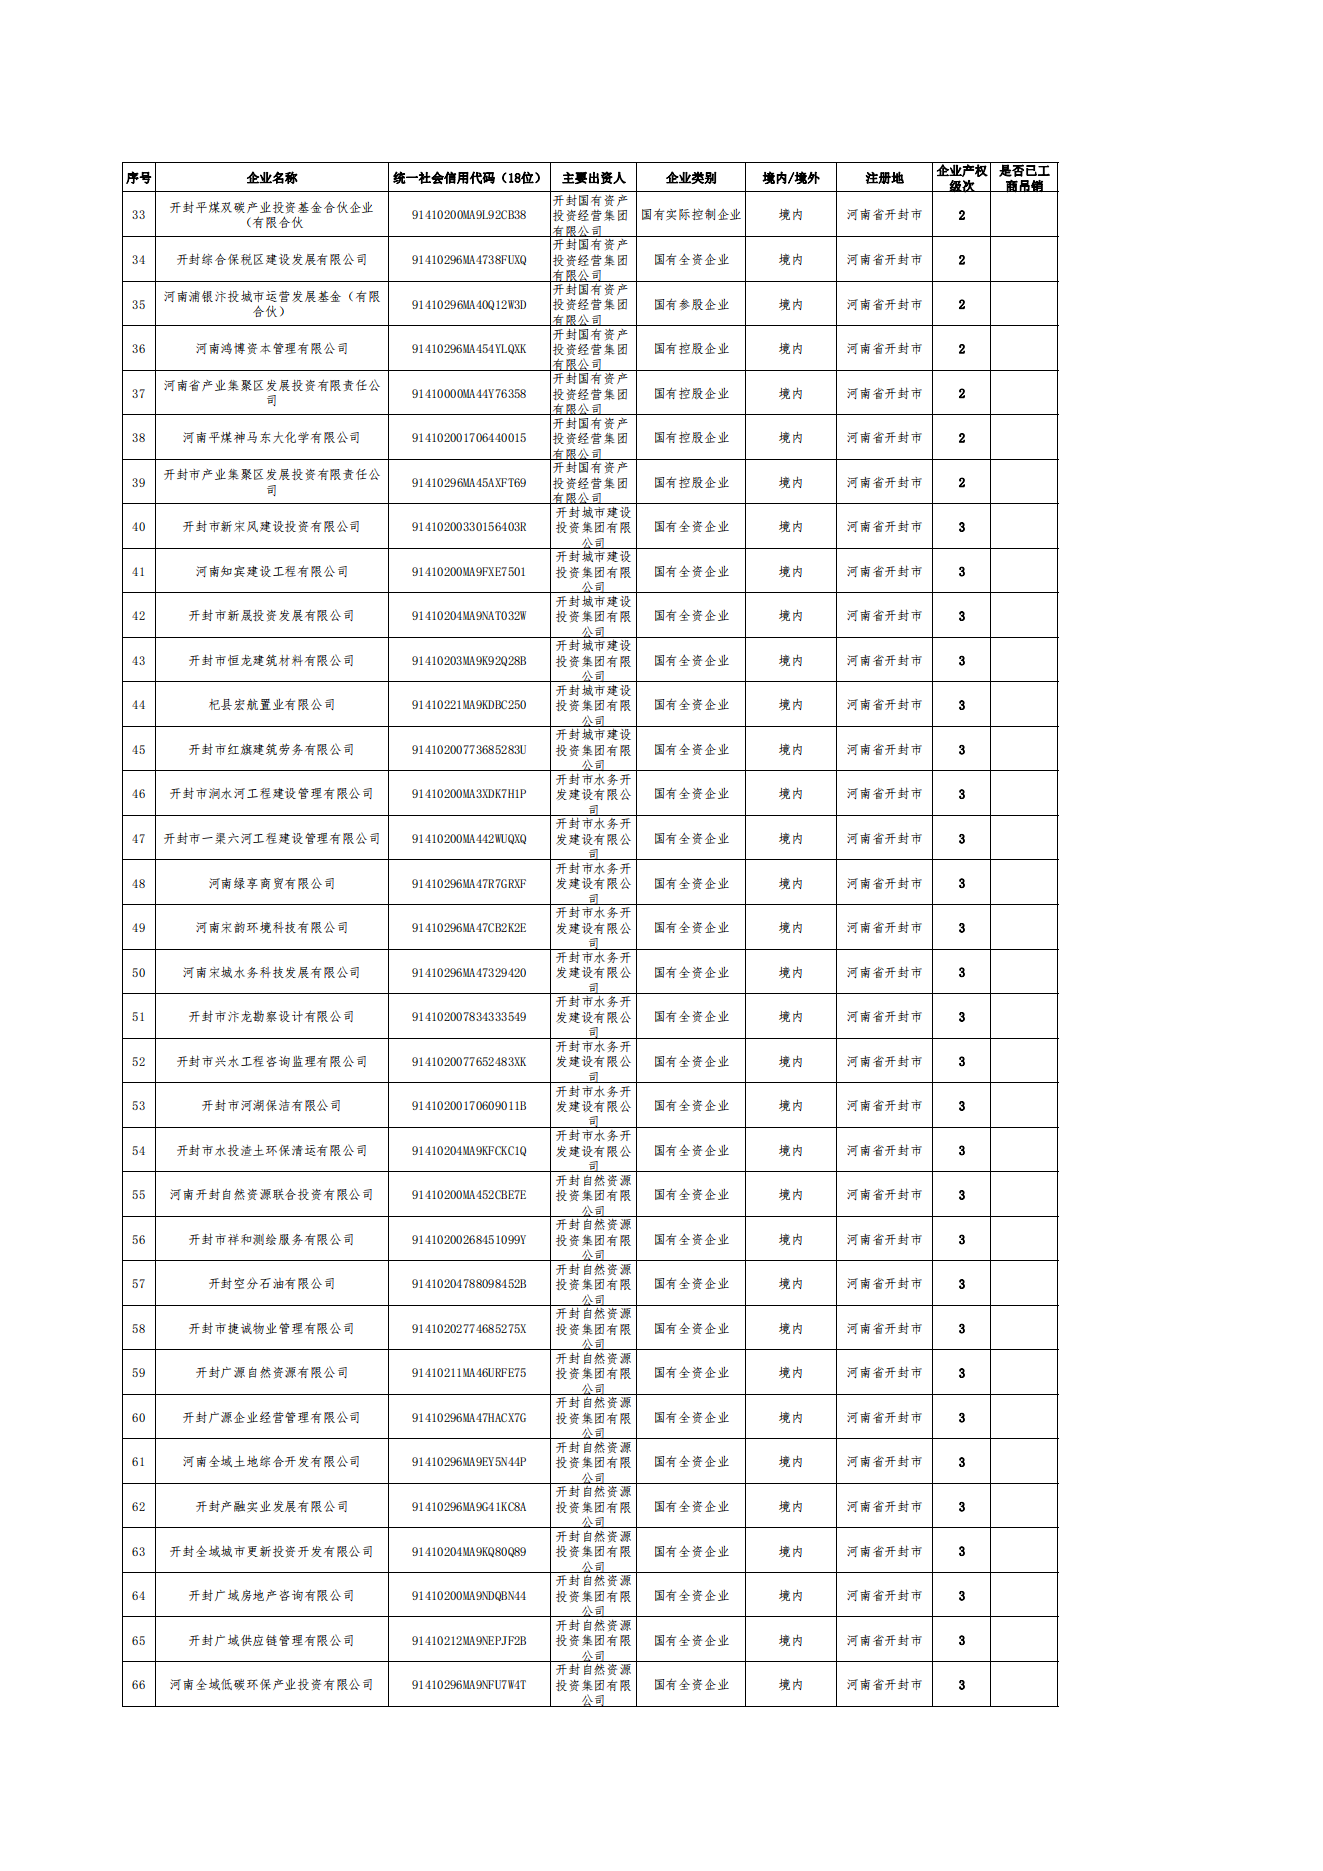 公告-全级次企业名单(1)_01.png